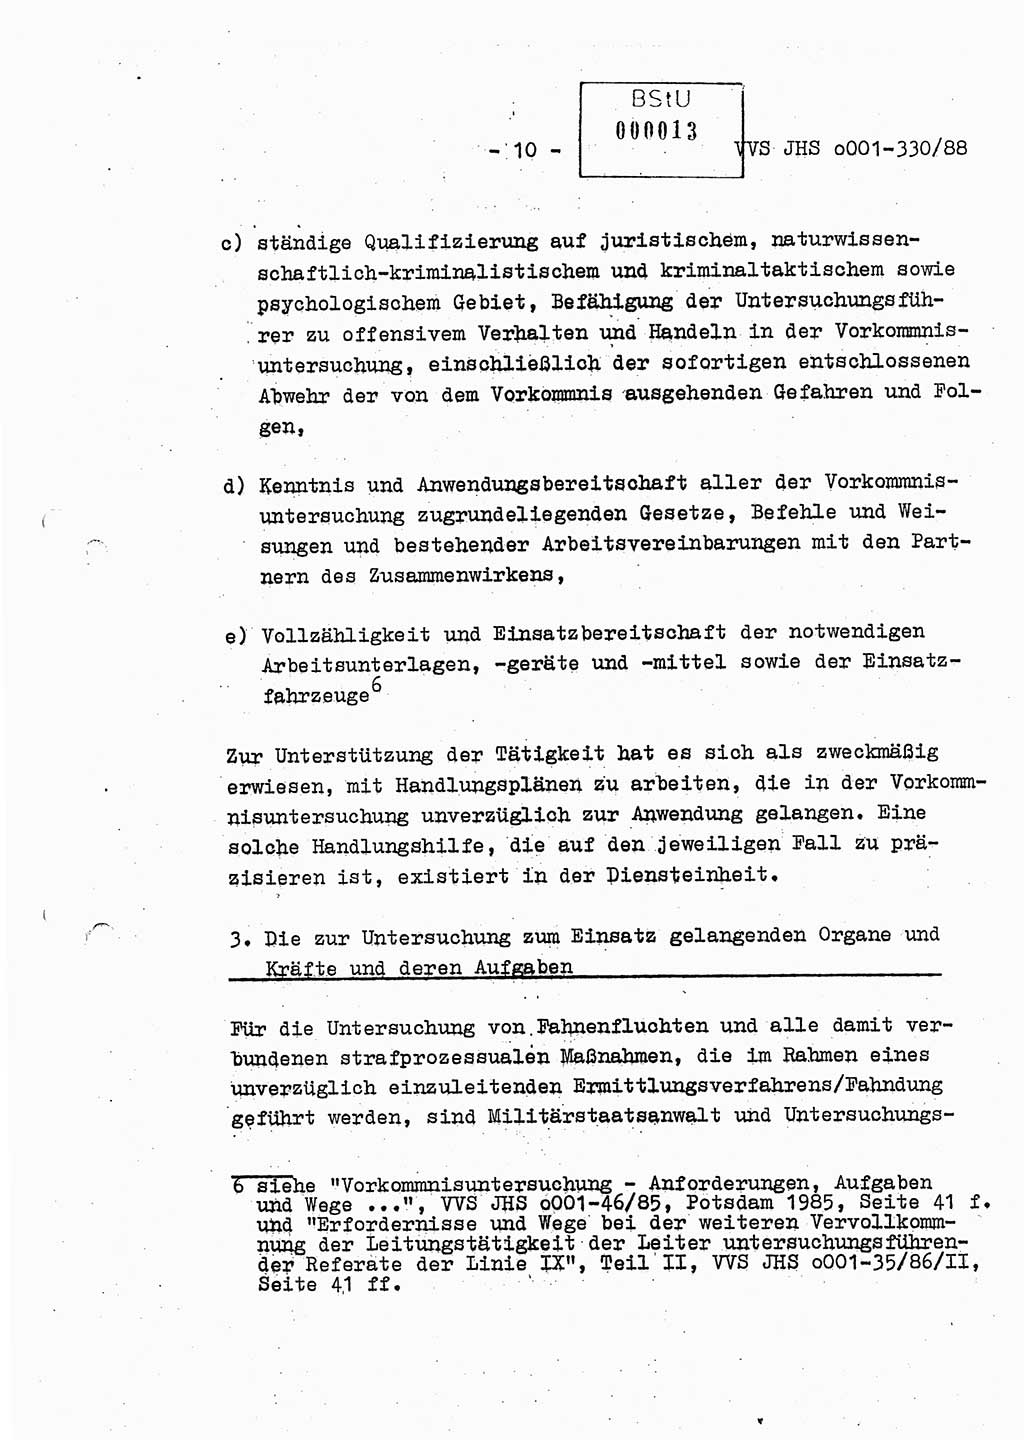 Diplomarbeit Offiziersschüler Thomas Mühle (HA Ⅸ/6), Ministerium für Staatssicherheit (MfS) [Deutsche Demokratische Republik (DDR)], Juristische Hochschule (JHS), Vertrauliche Verschlußsache (VVS) o001-330/88, Potsdam 1988, Seite 10 (Dipl.-Arb. MfS DDR JHS VVS o001-330/88 1988, S. 10)